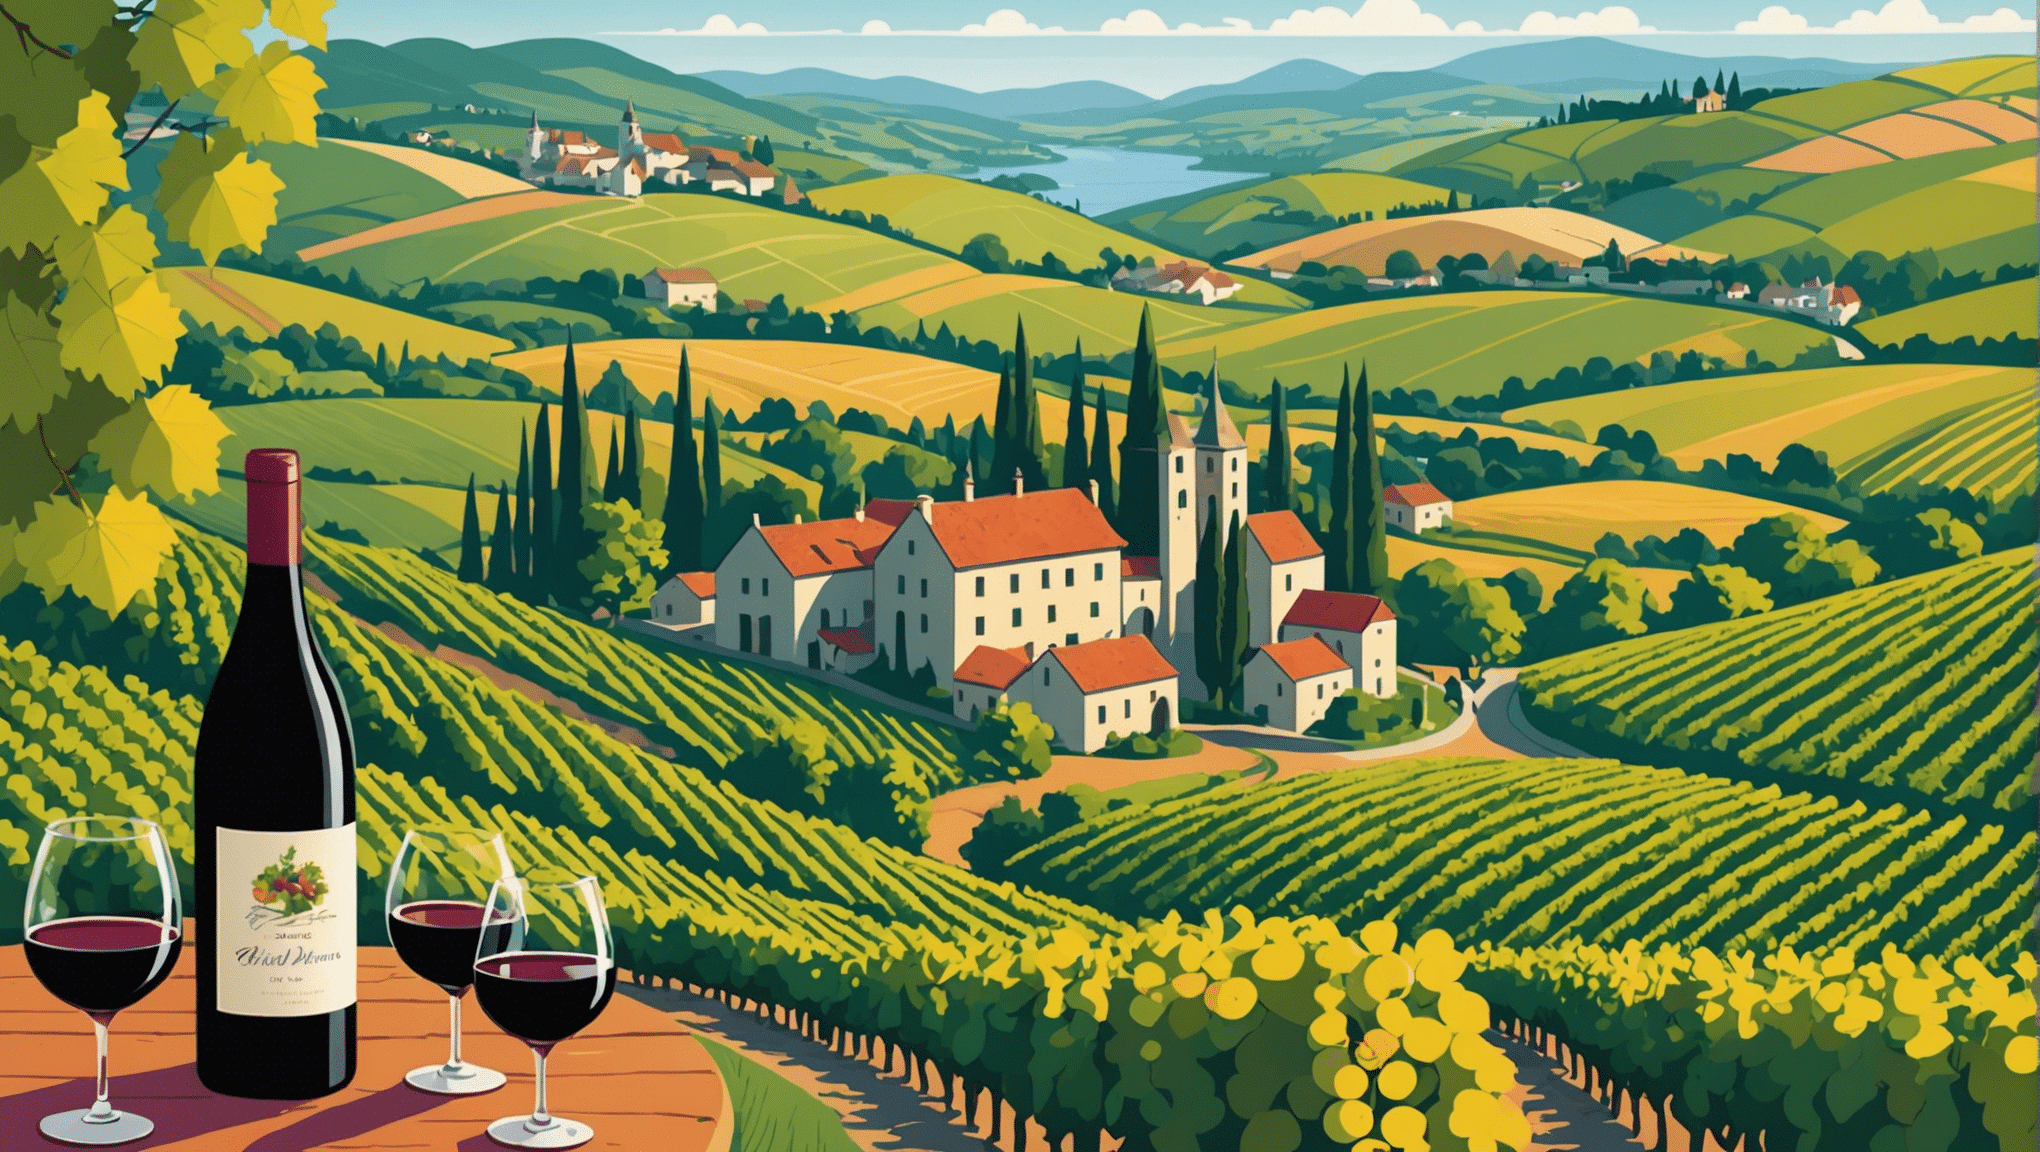 descubra as mais belas rotas da rota do vinho para explorar. desfrute de paisagens encantadoras e degustações inesquecíveis durante sua jornada vinícola.